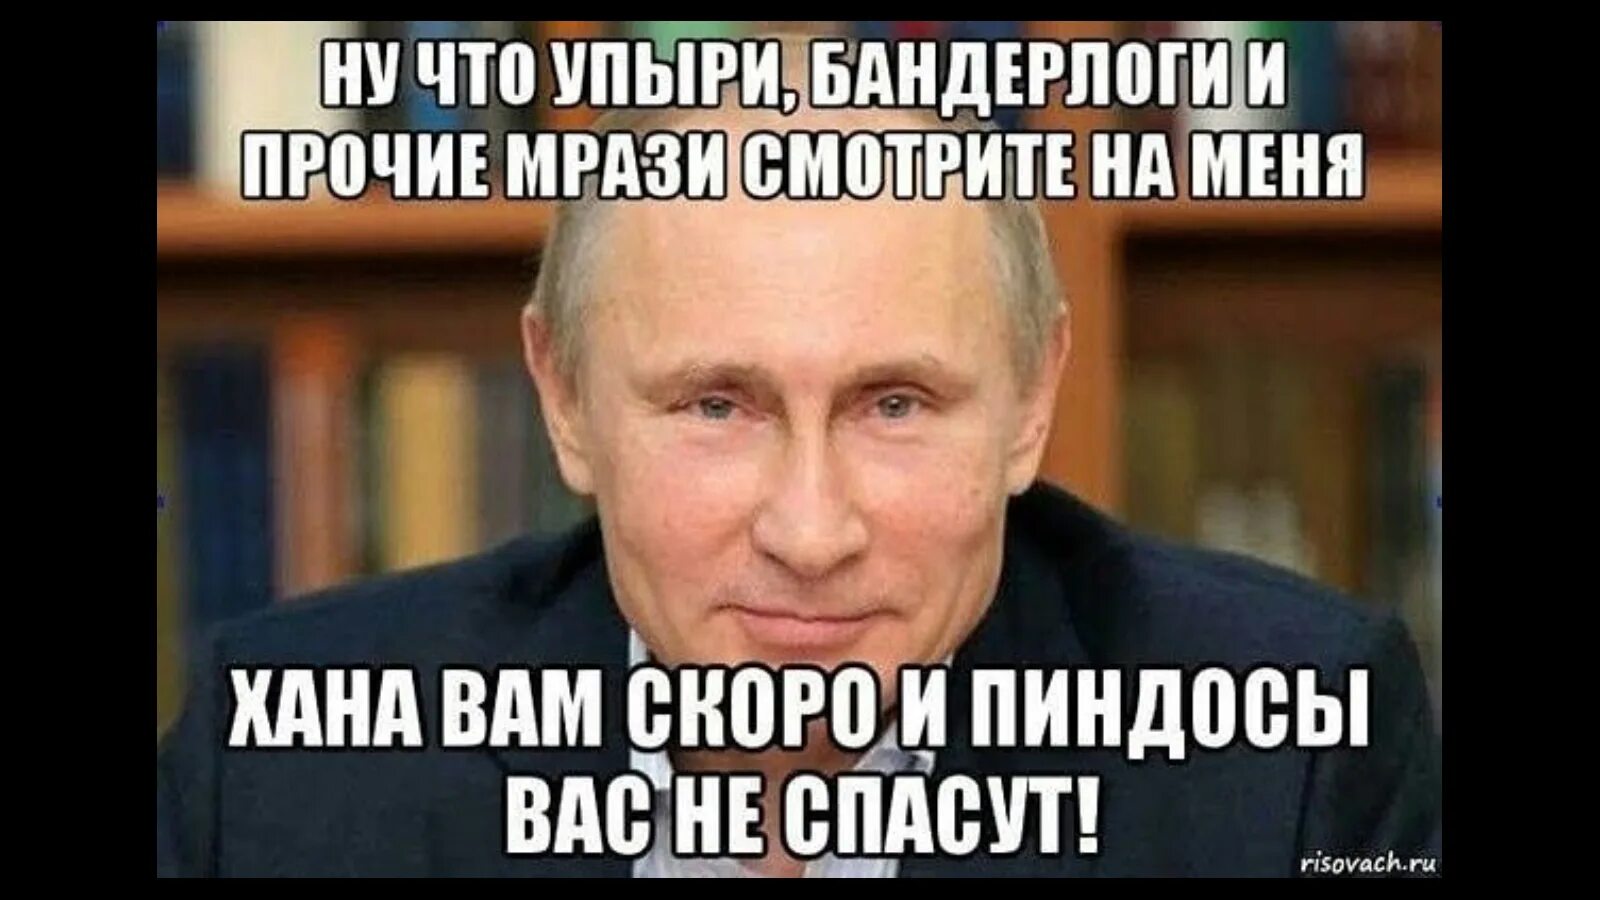 Мемы про пиндосов. Мемы с Путиным и Хохлов. День мрази